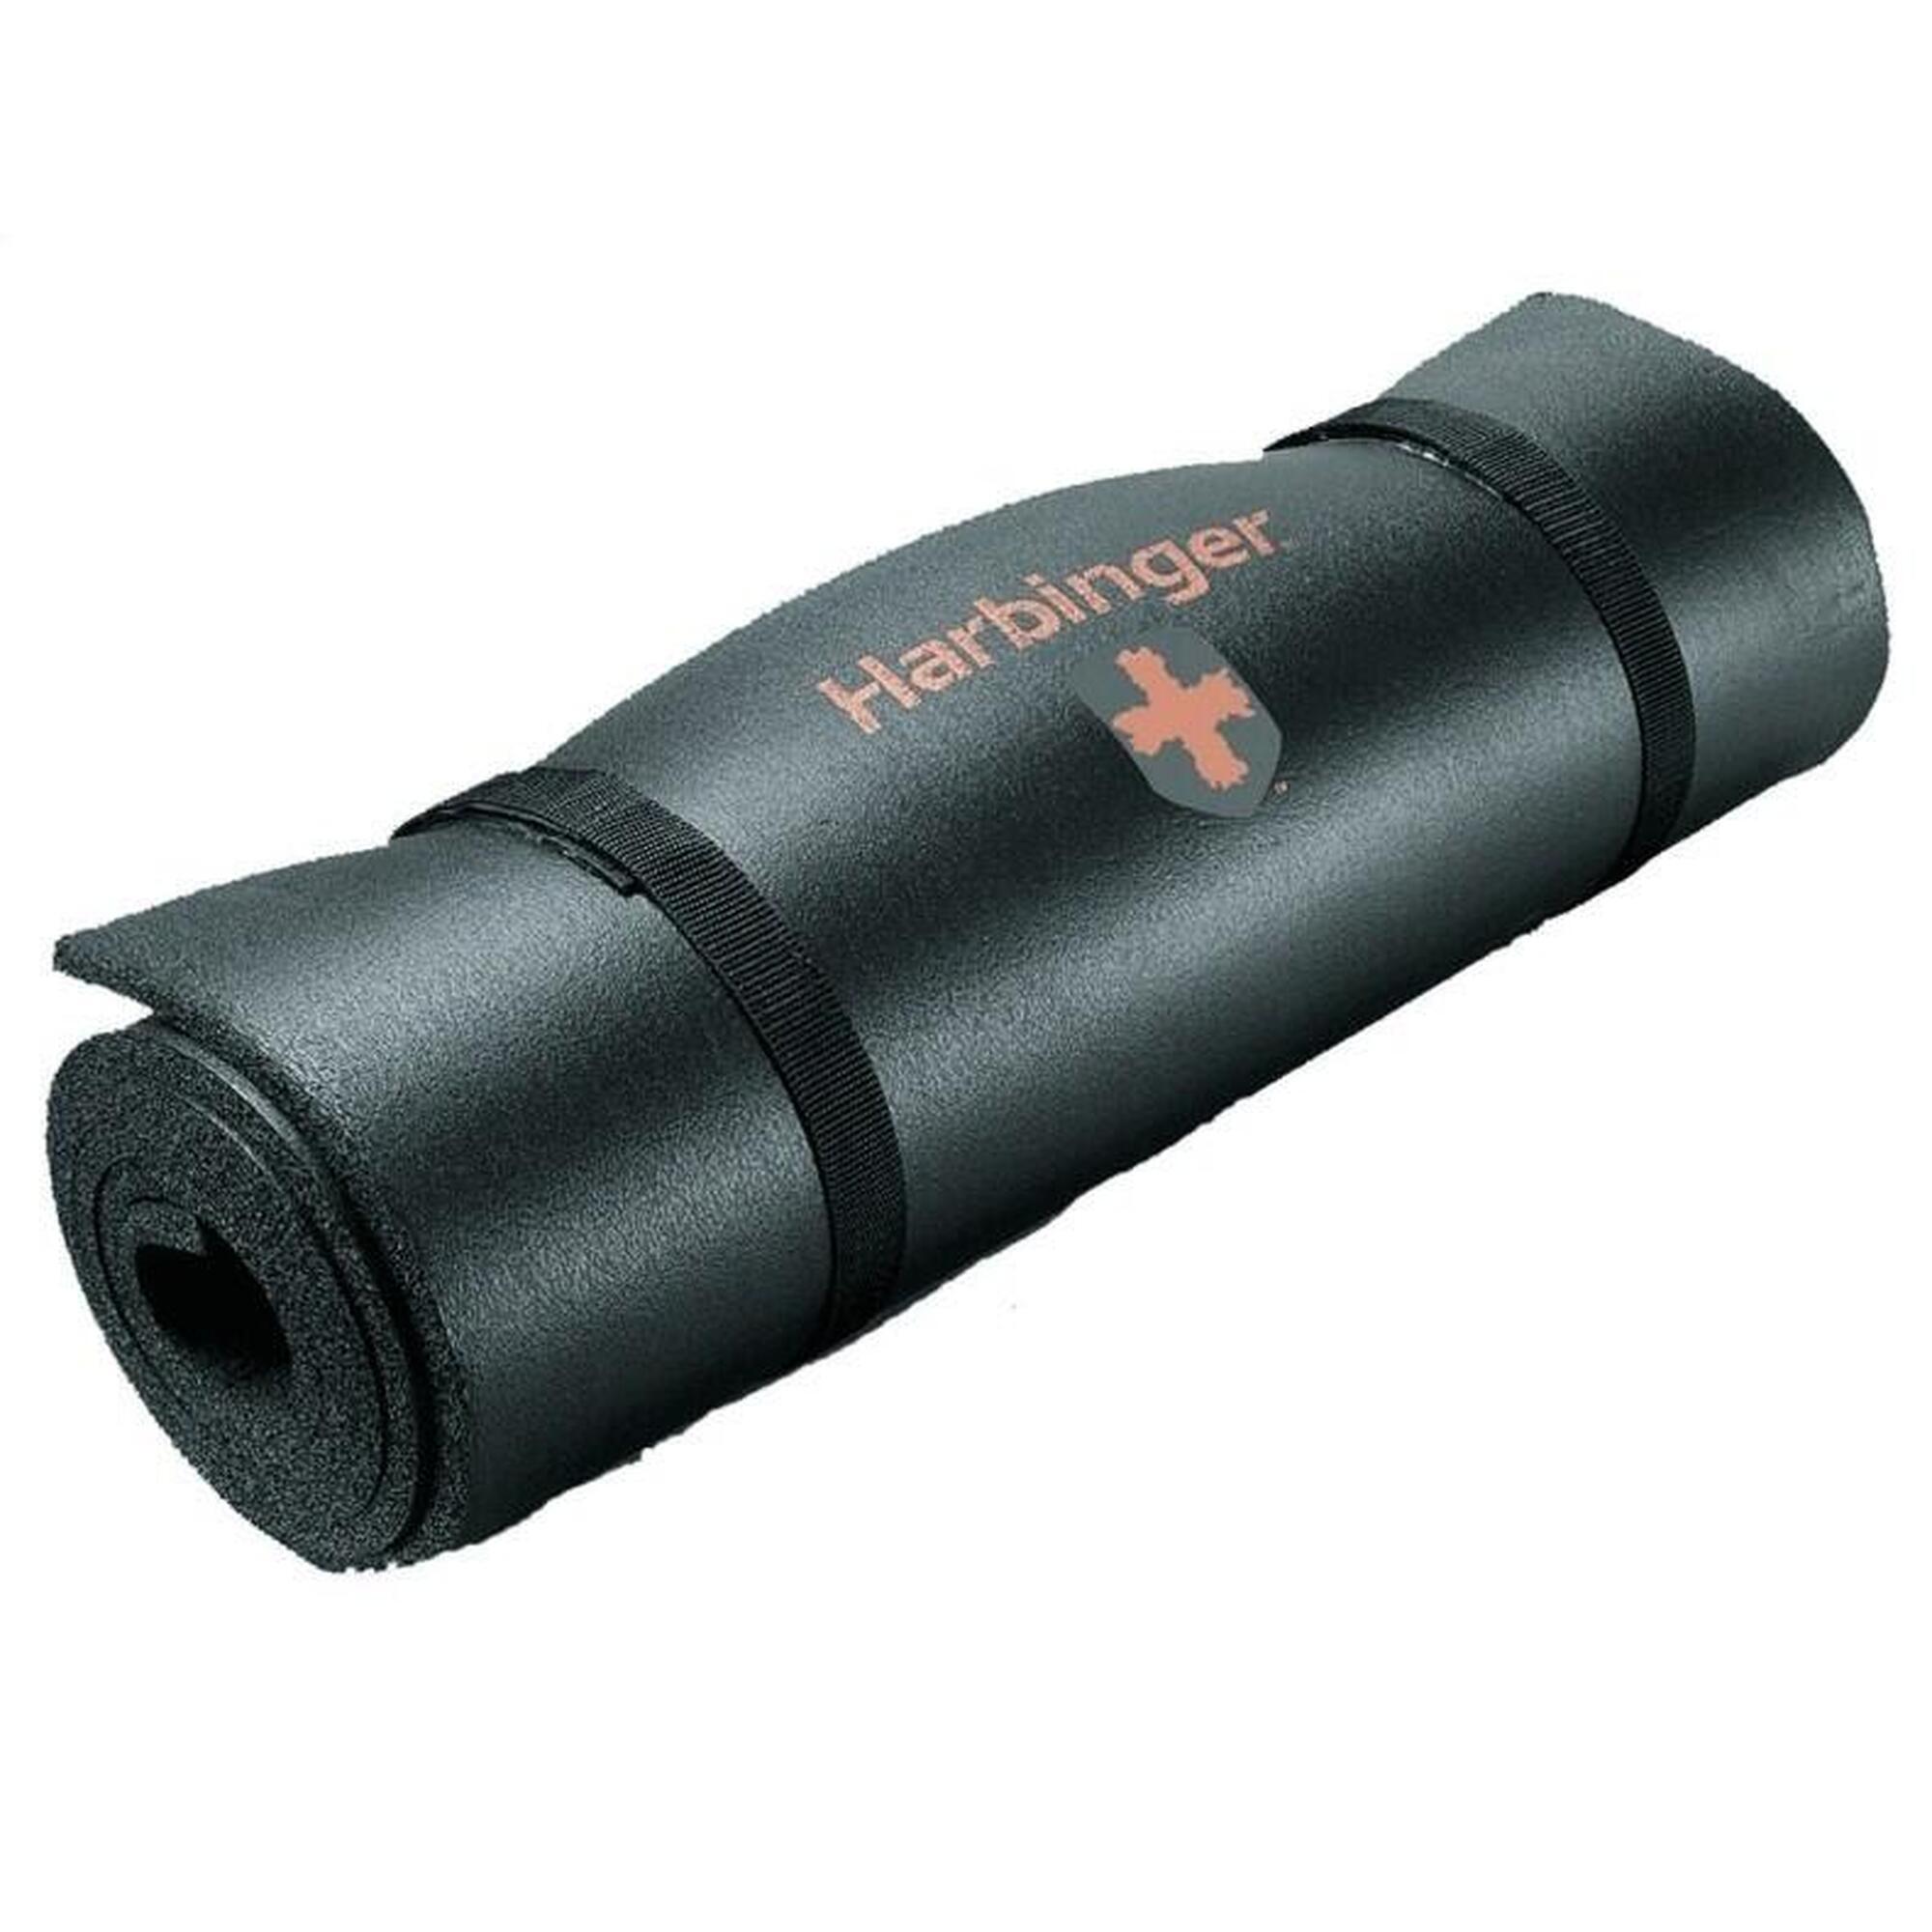 Harbinger DuraFoam, Tapete de chão antiderrapante para exercícios fitness, preto